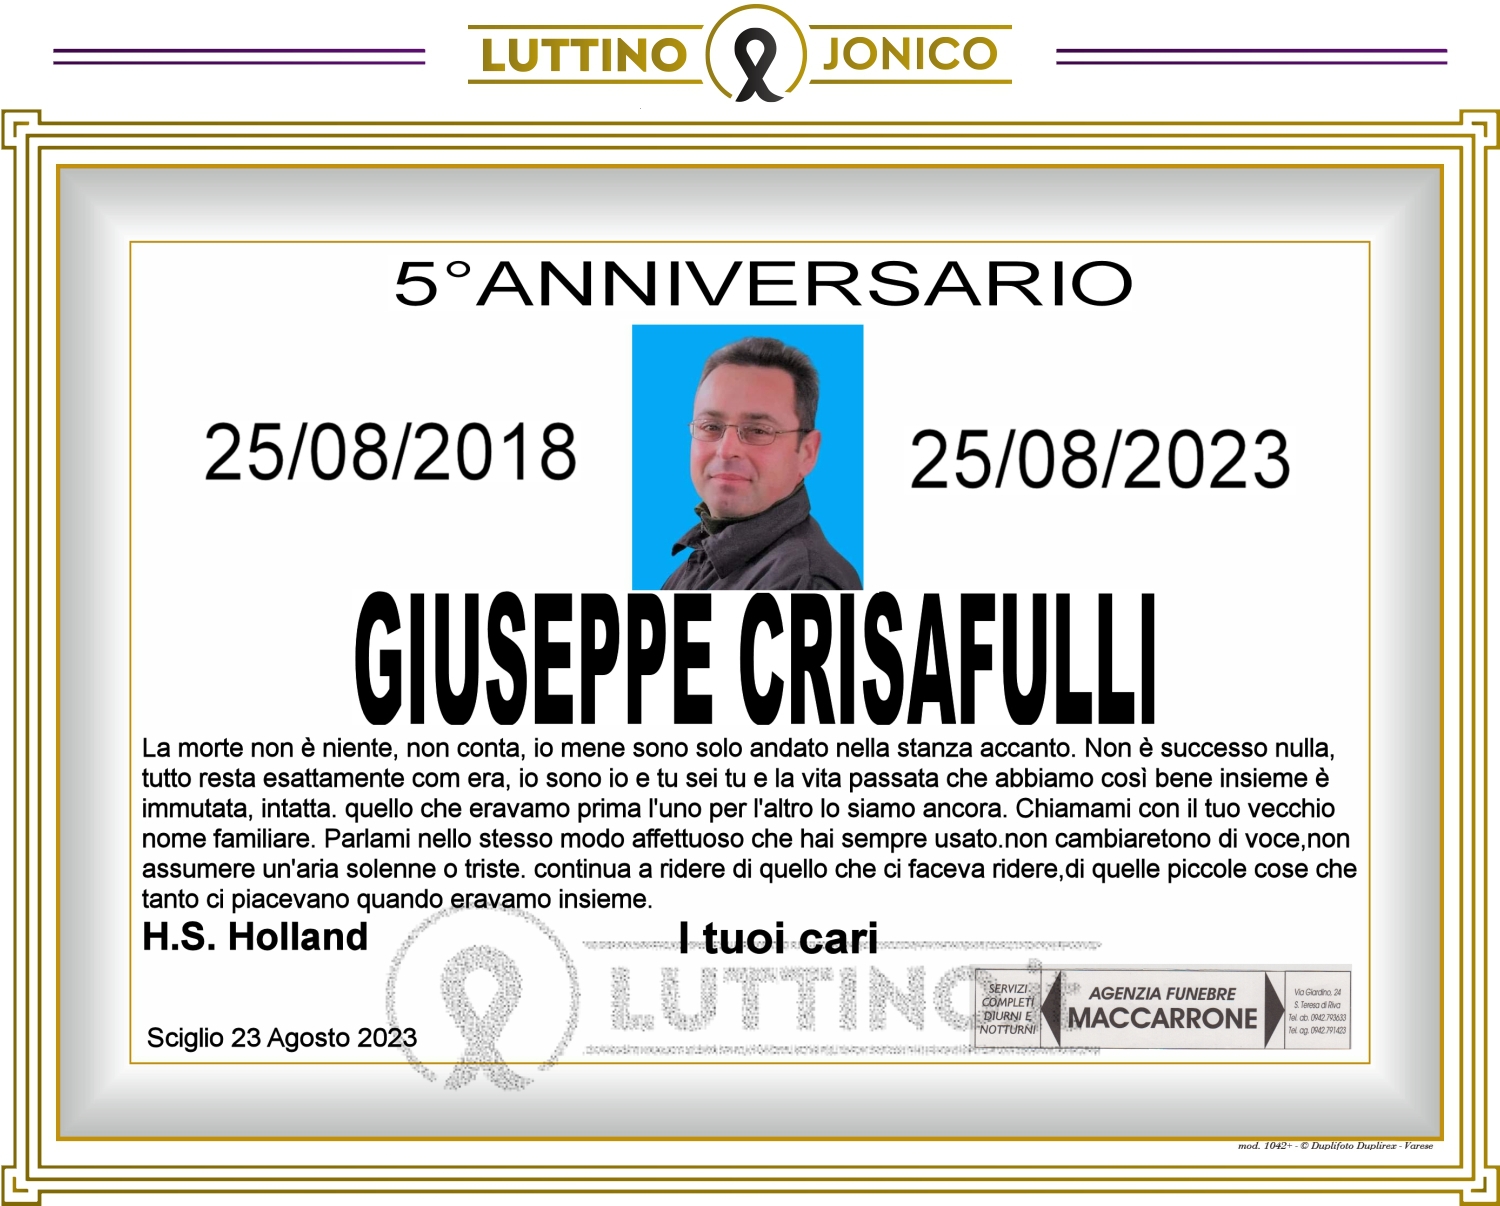 Giuseppe Crisafulli